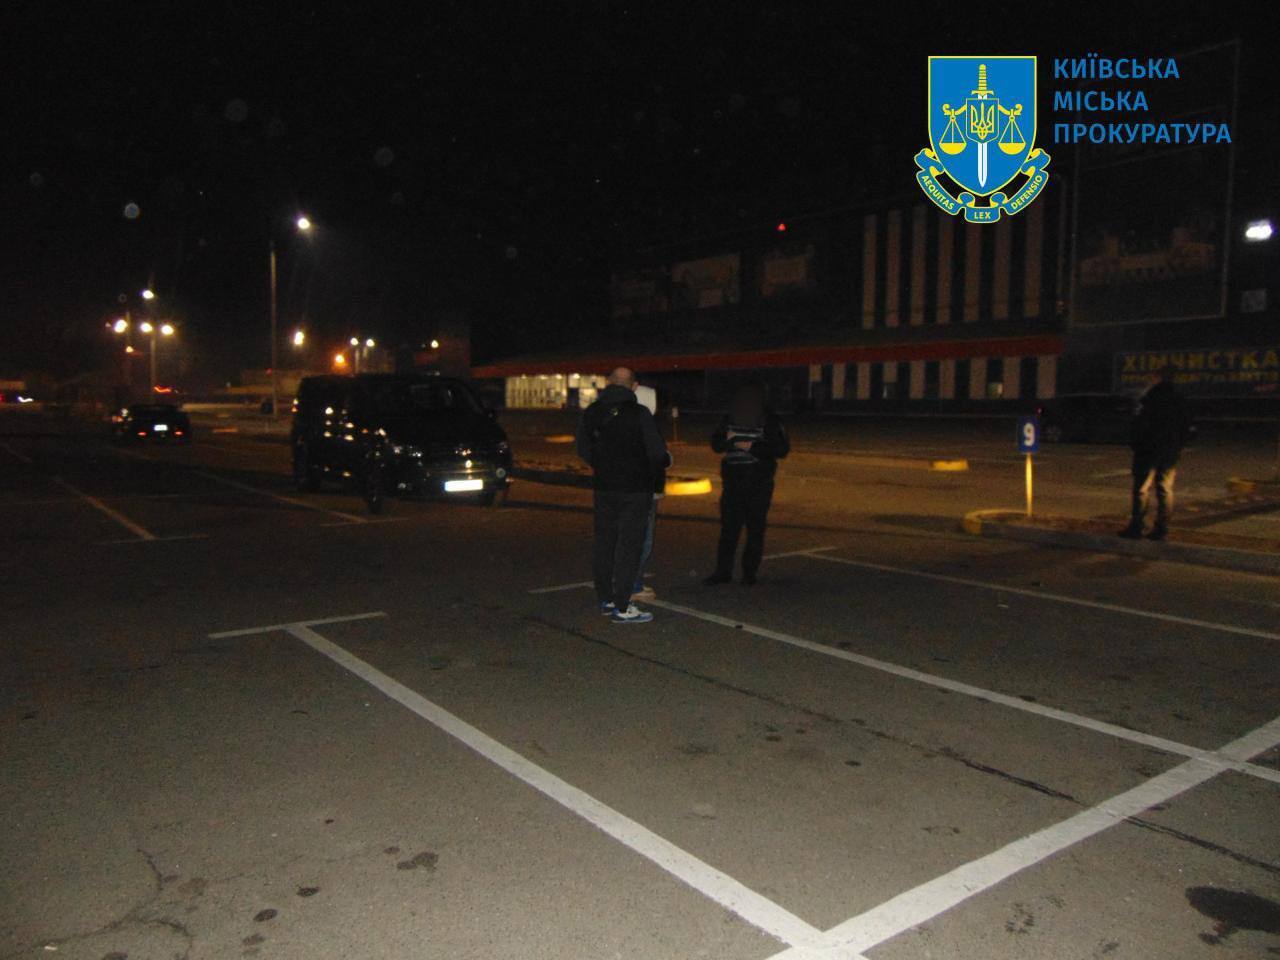 В Киеве двое мужчин избили владельца и пытались угнать авто с парковки, чтобы продать и убежать за границу